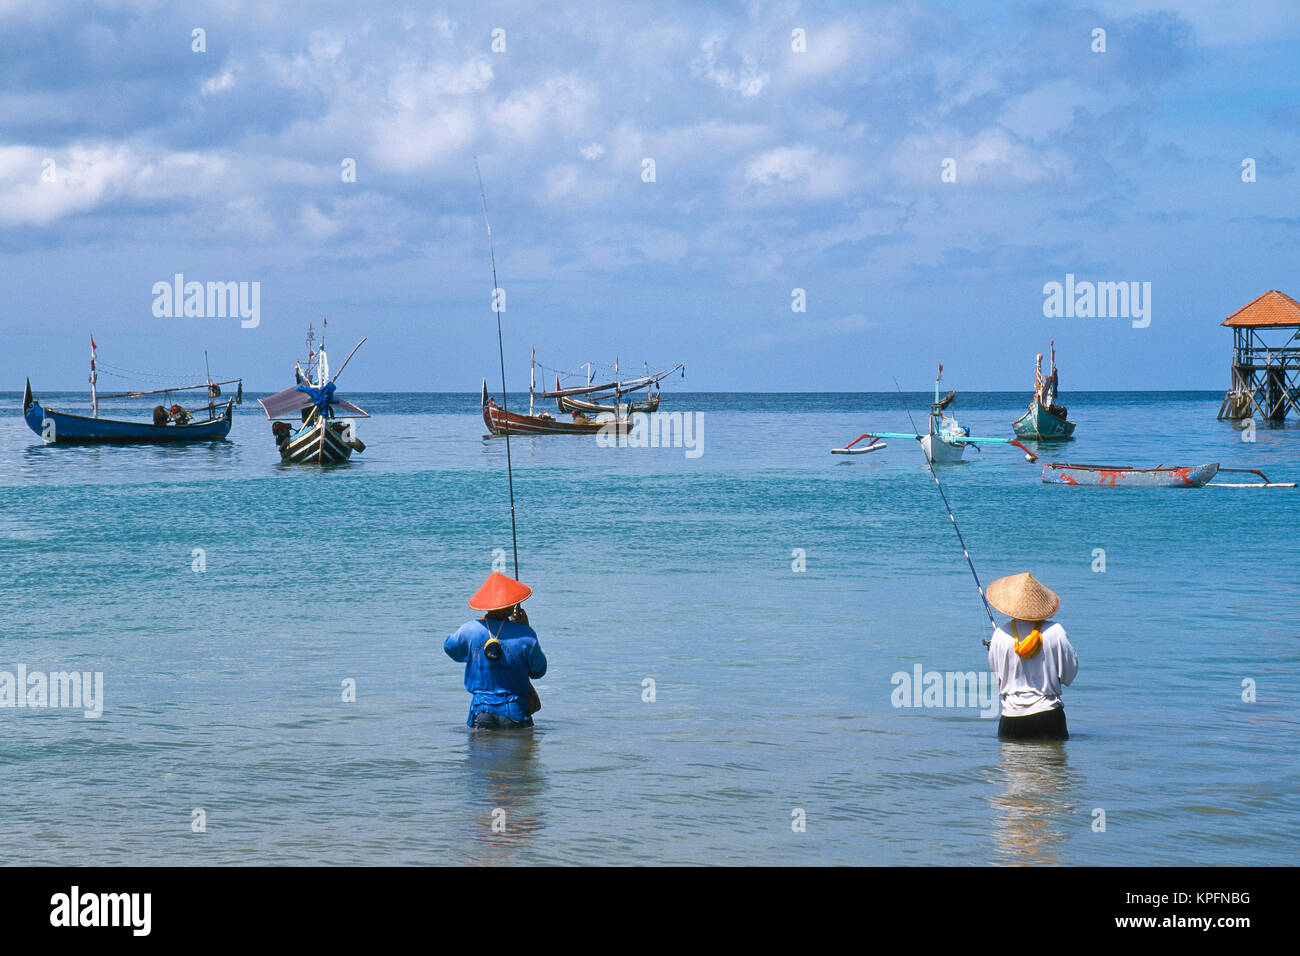 L'Asie, INDONÉSIE, Bali, Jimbaran et village de pêcheurs. Pêche balinais avec des stabilisateurs (jukungs) dans l'arrière-plan. Banque D'Images